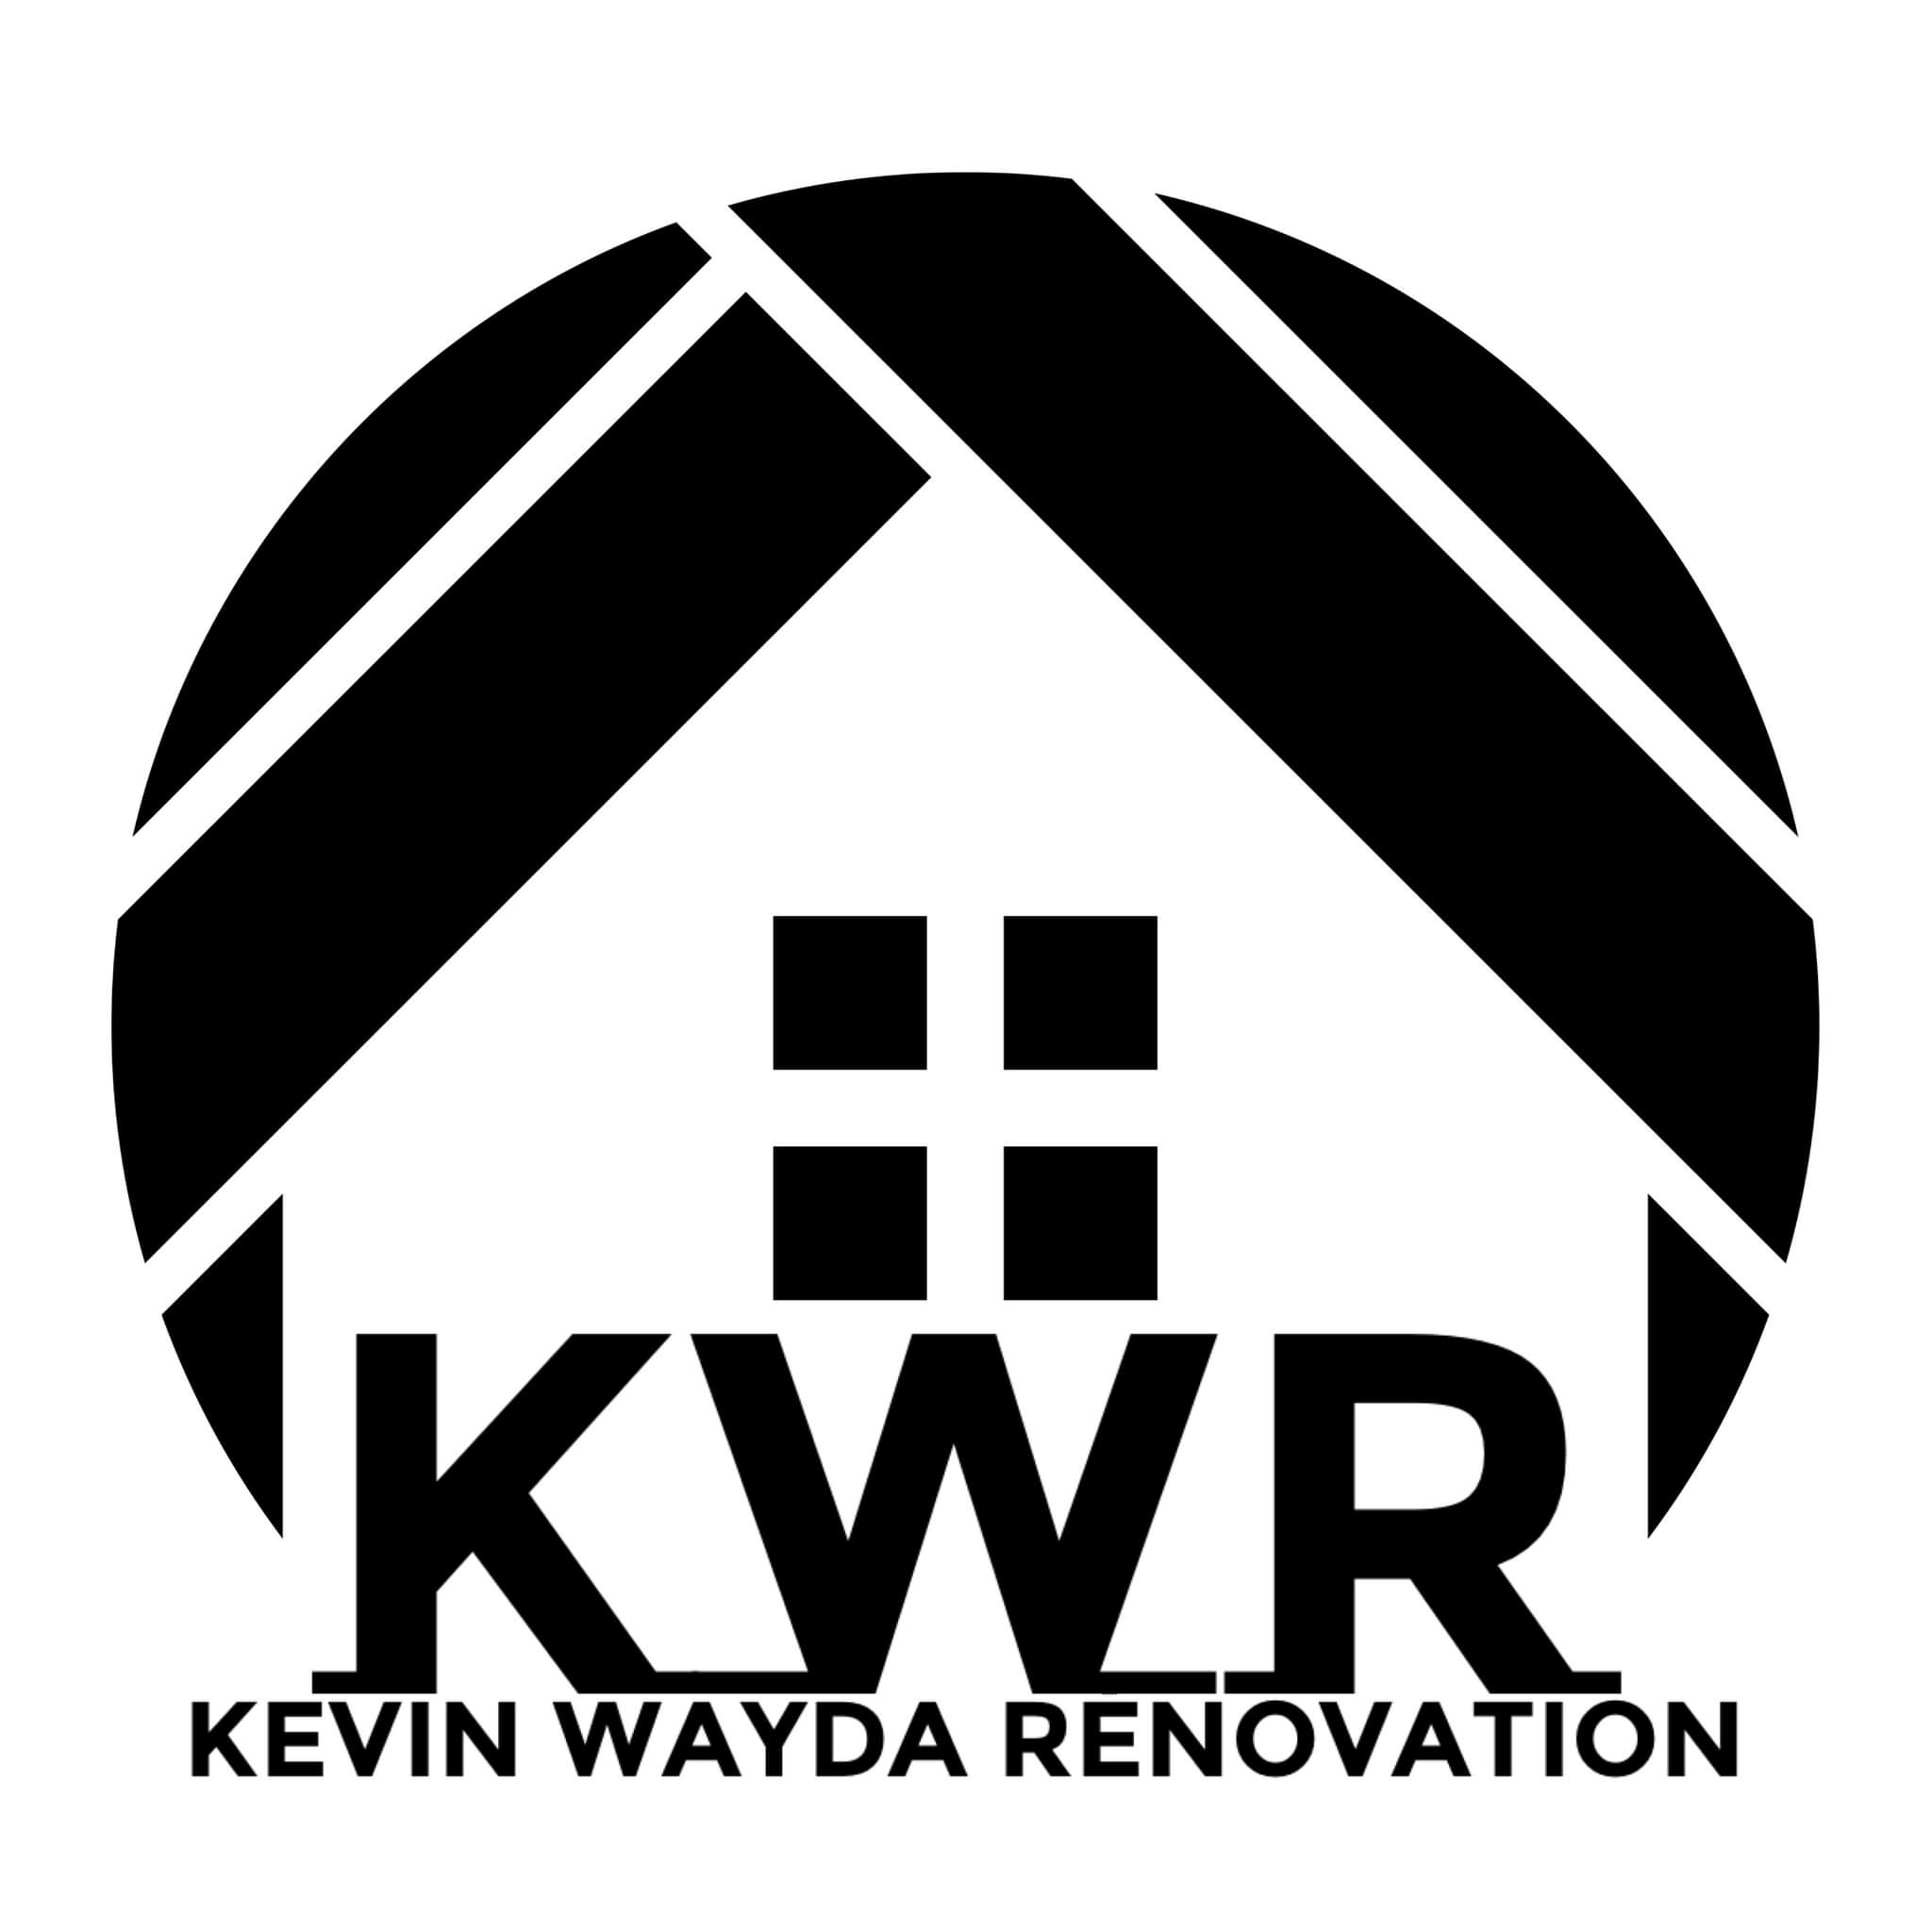 Kevin Wayda Renovation